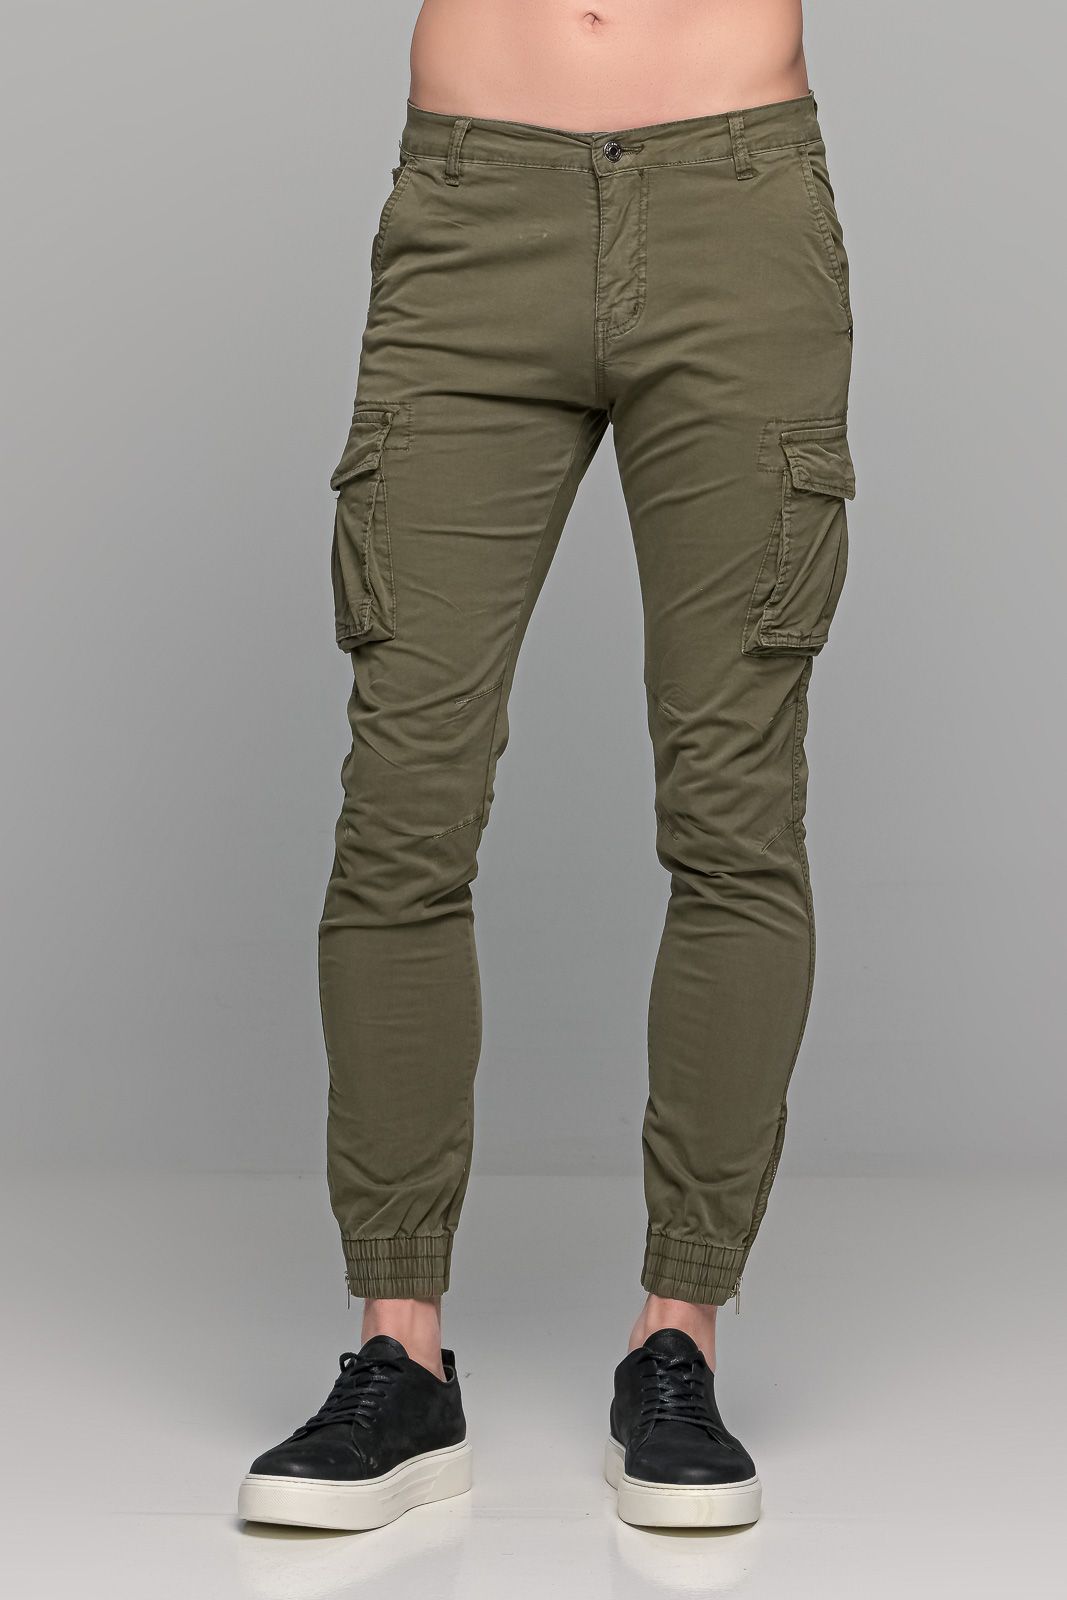 Πράσινα χακί ανδρικό cargo παντελόνι με λάστιχο - Skinny fit